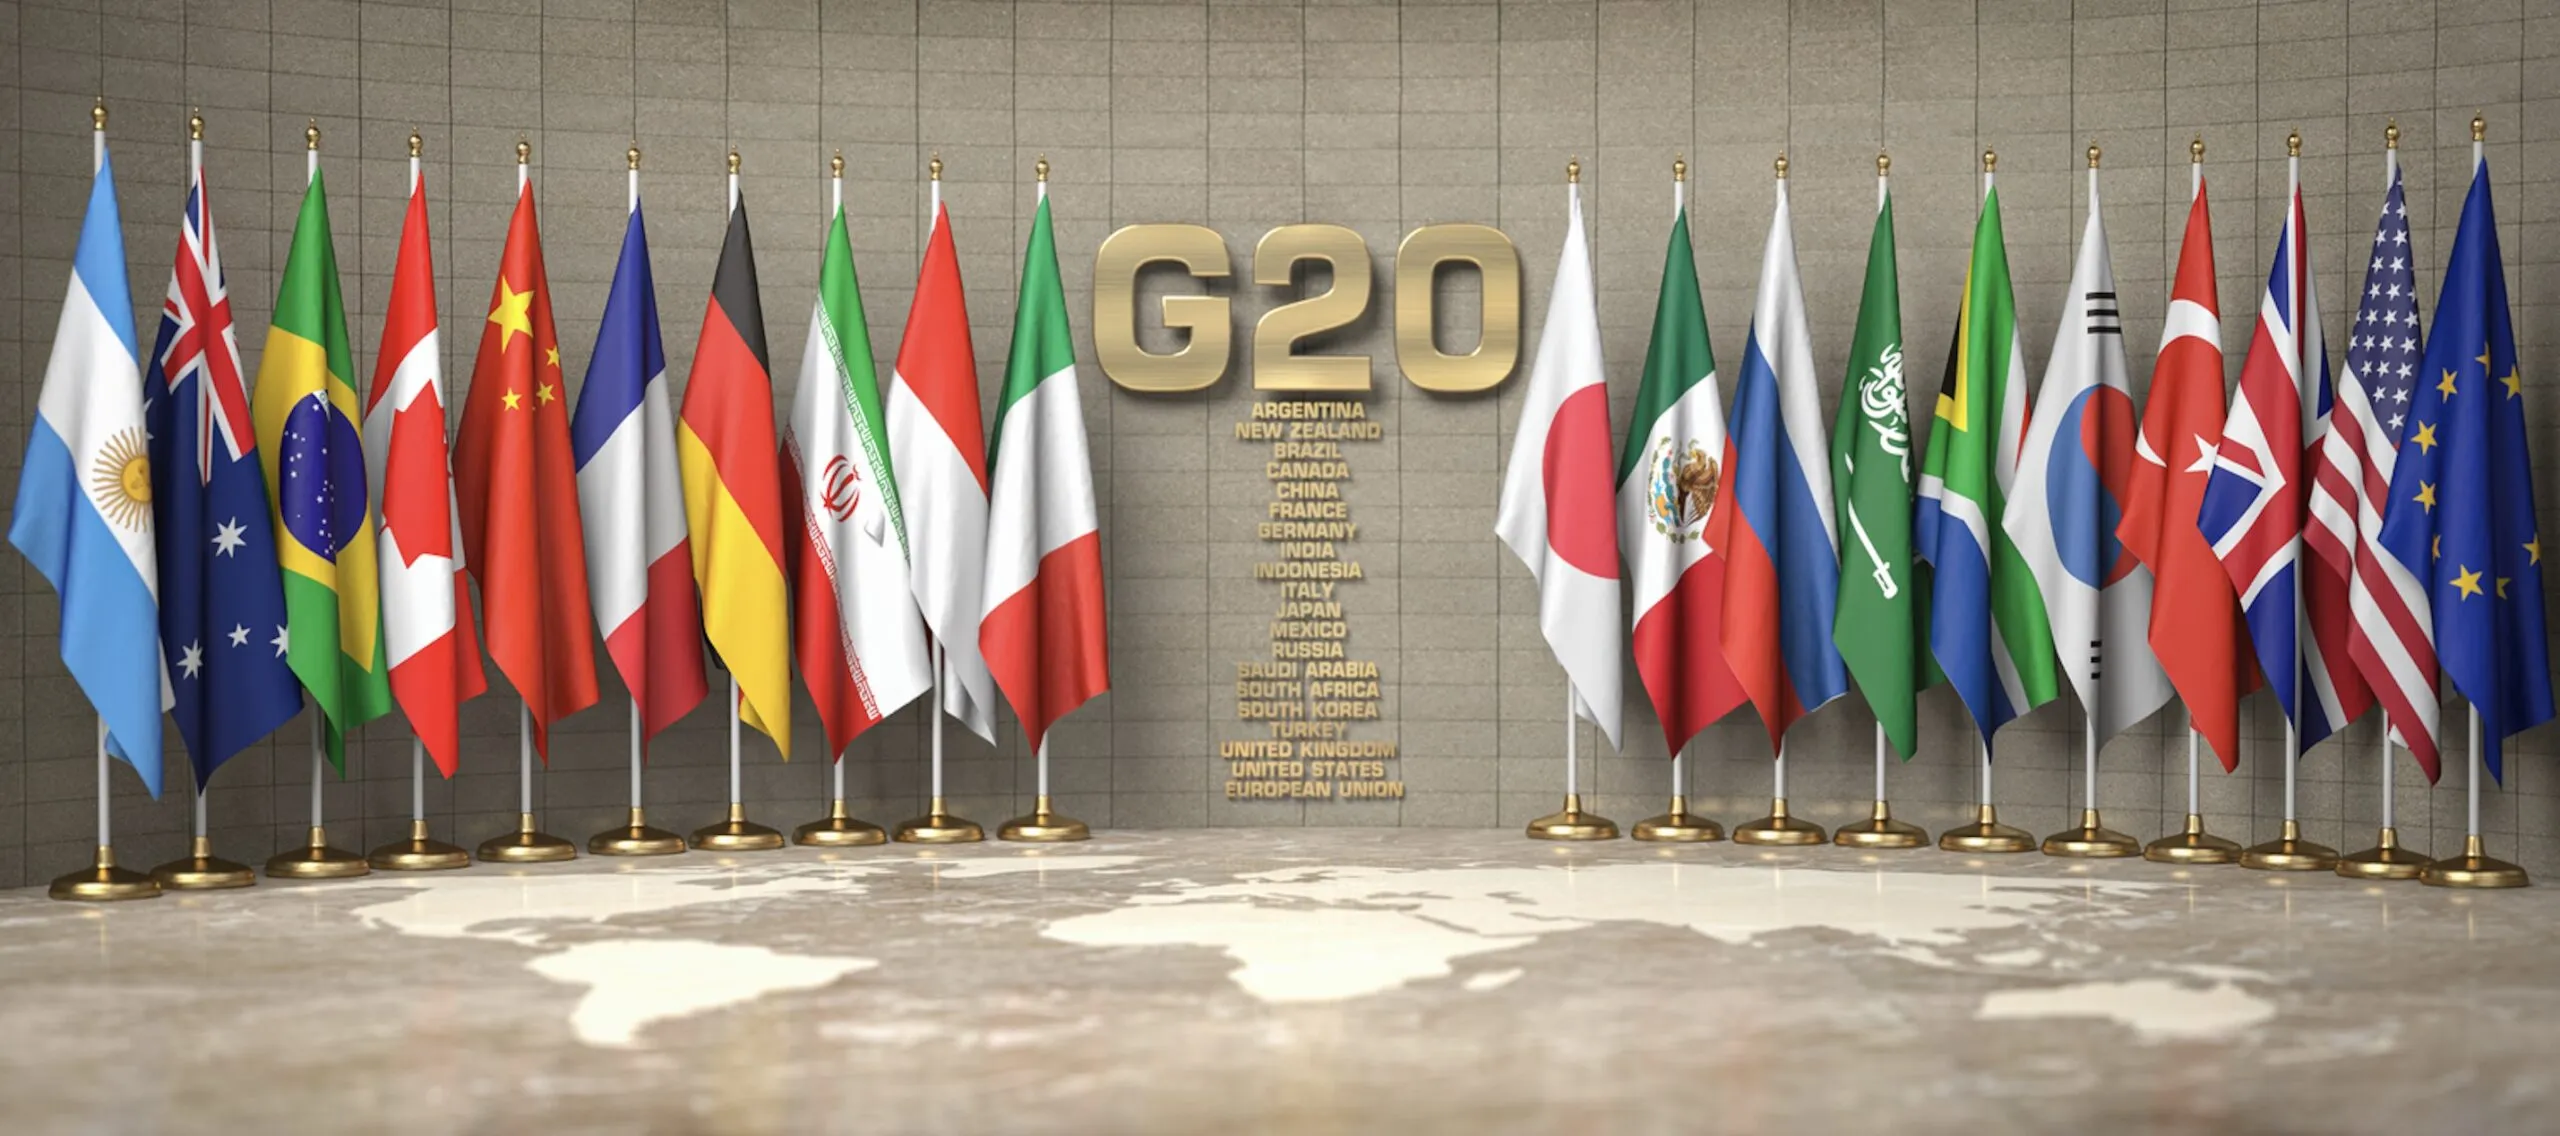 G20 : La Chine et la Russie refusent de signer un communiqué final ; les détails